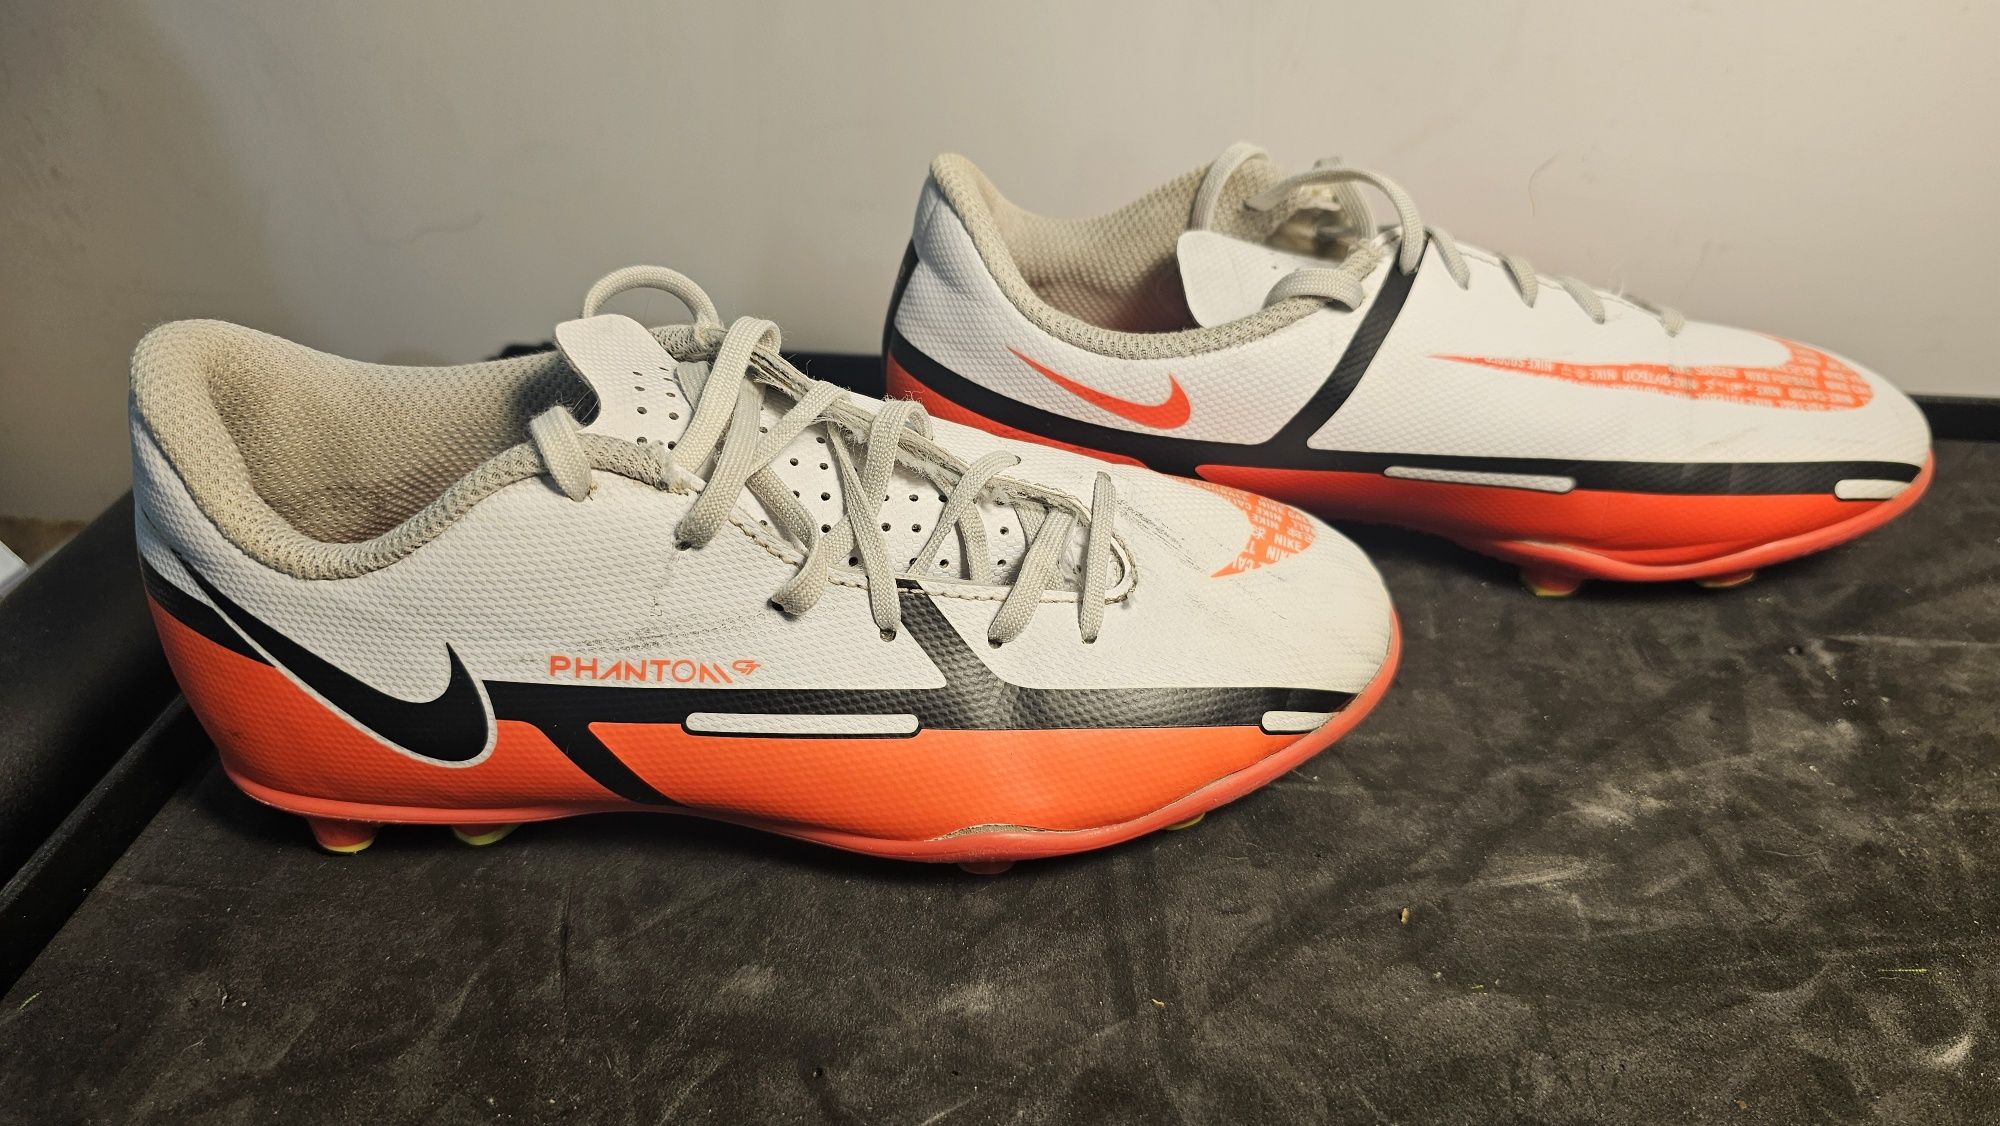 Buty piłkarskie korki Nike chłopięce rozmiar 33